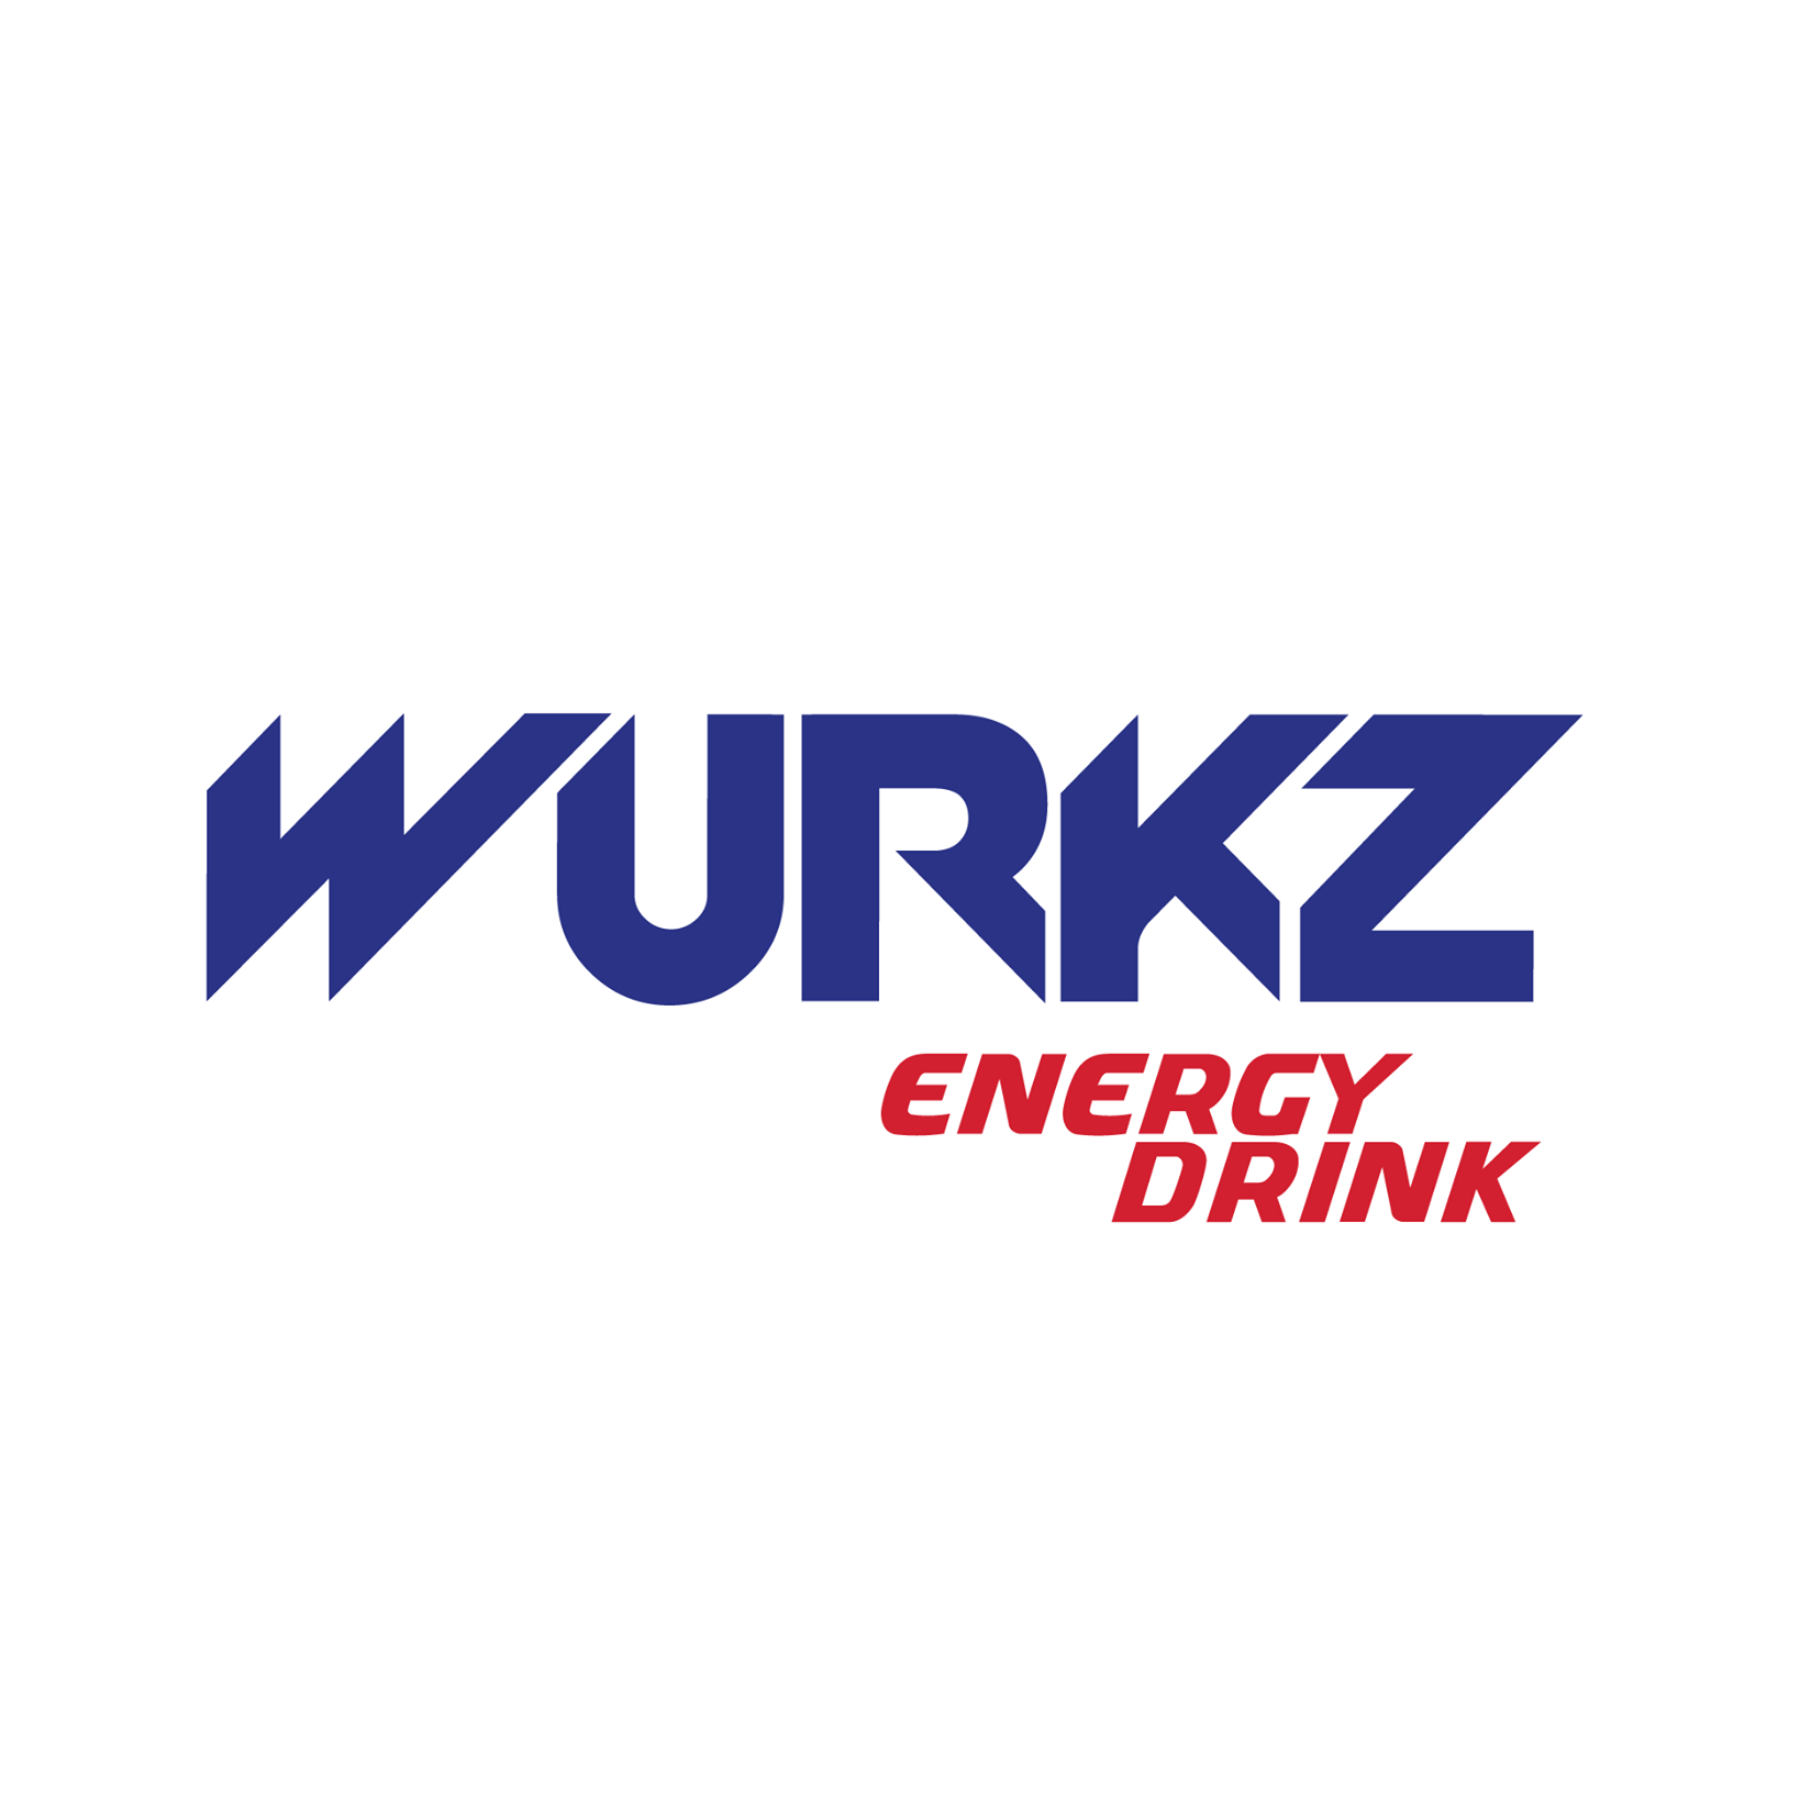 Wurkz